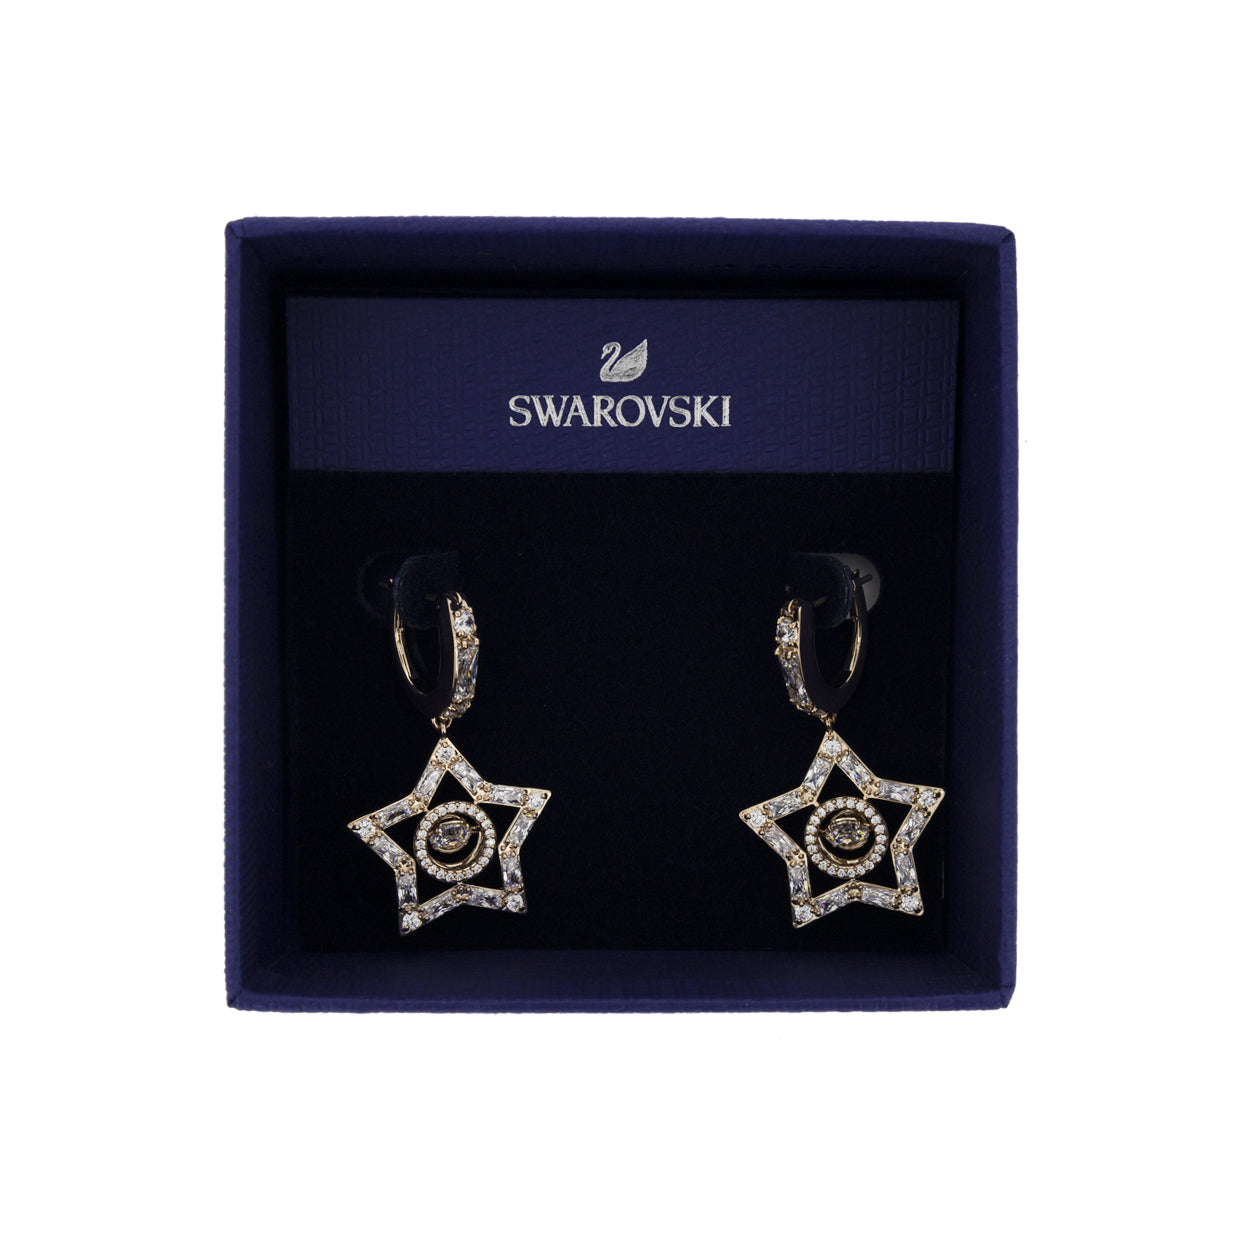 Swarovski Rose Gold Star Earrings 5617769 